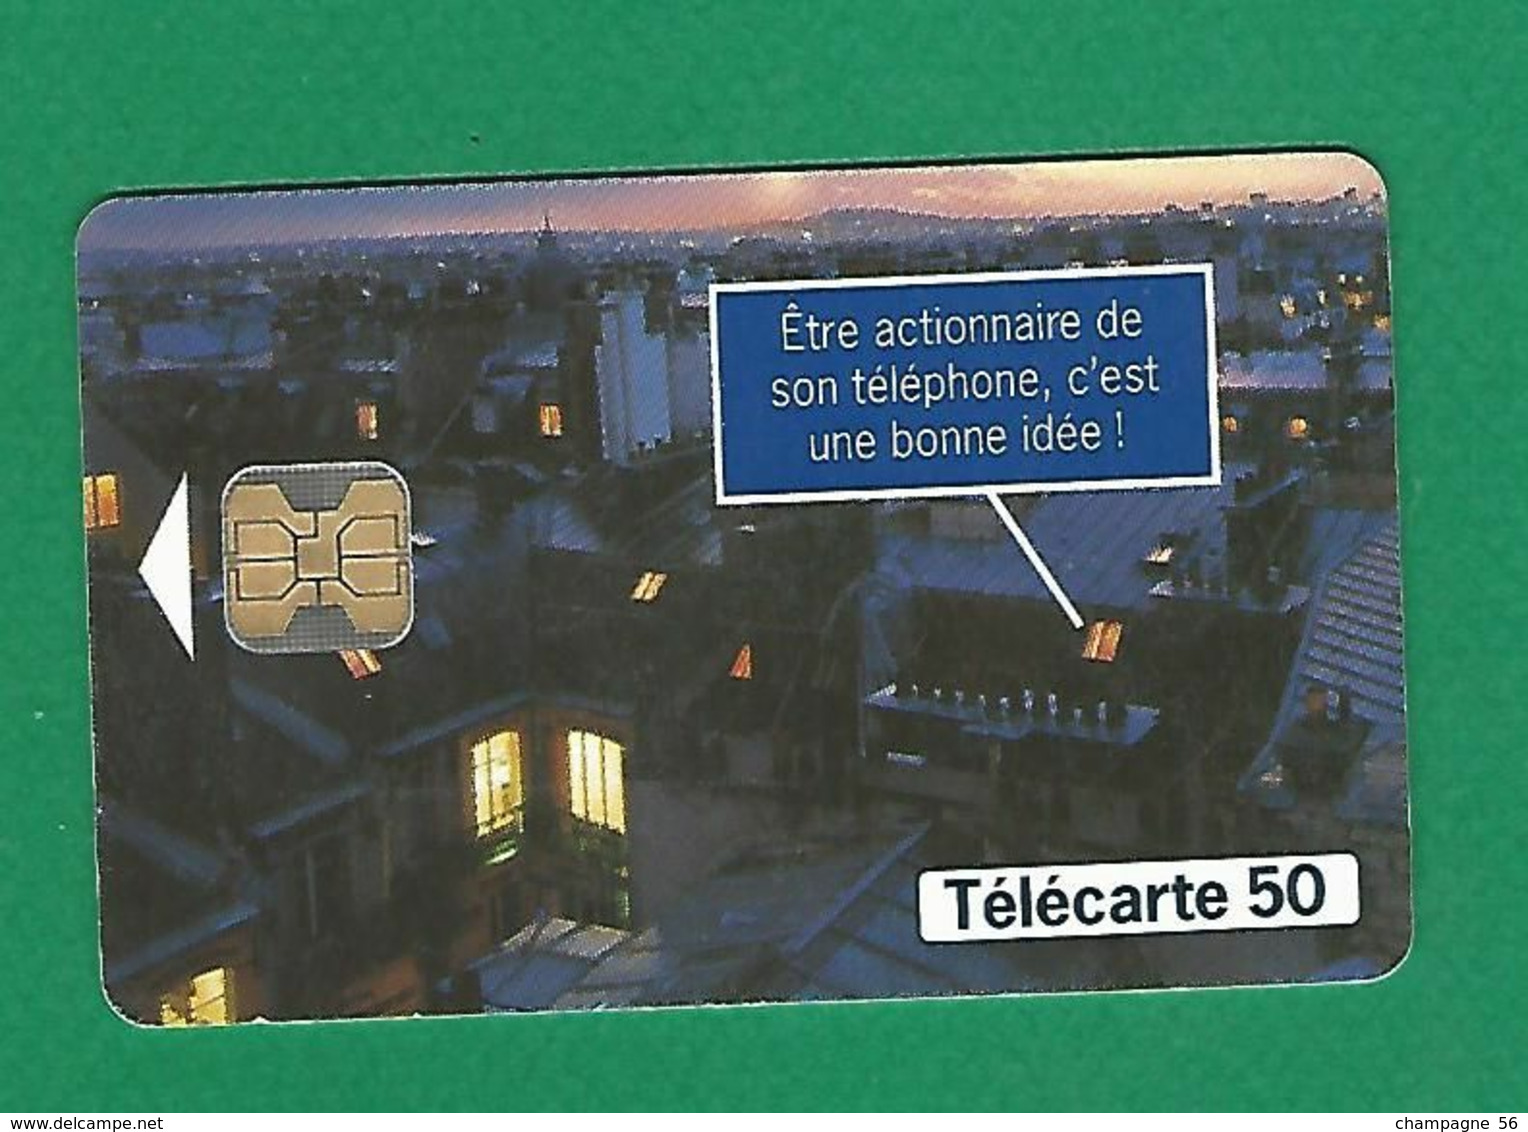 VARIÉTÉS FRANCE 97 F784E 50 / 05/97  OB2  TOITS CAPITAL FRANCE TELECOM  50 UNITES UTILISÉE - Fehldrucke